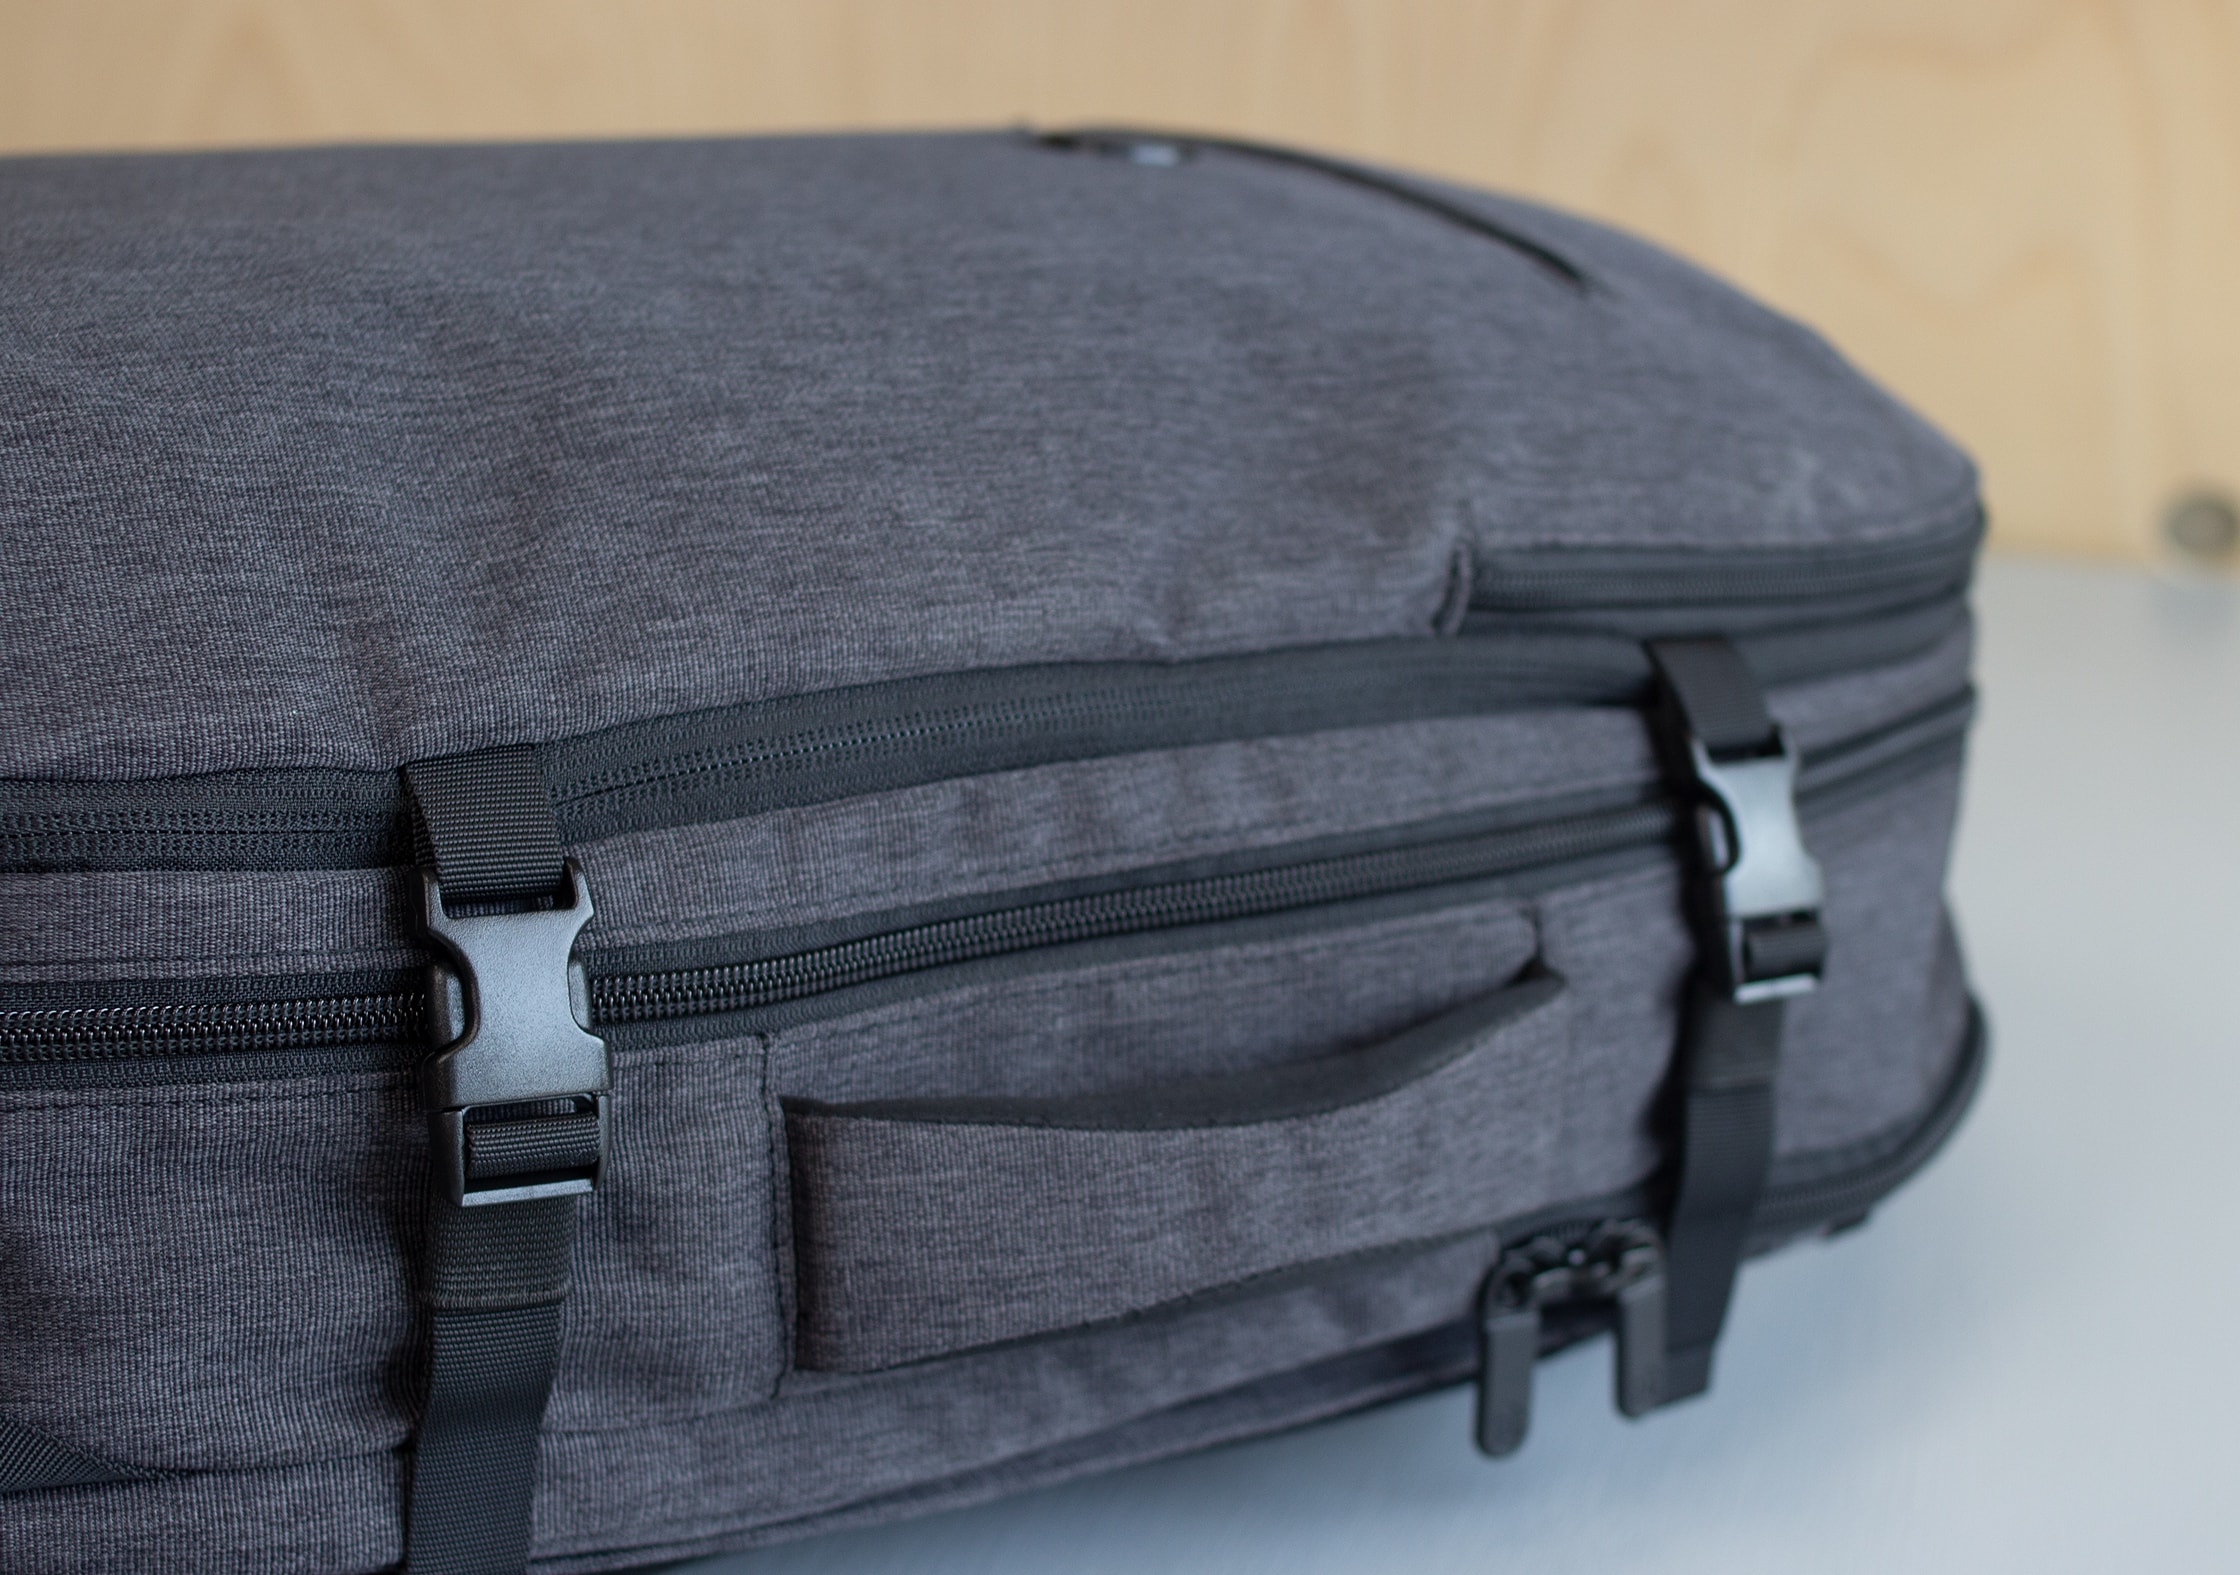 Tortuga Setout Divide Backpack Unbranded Compression Straps